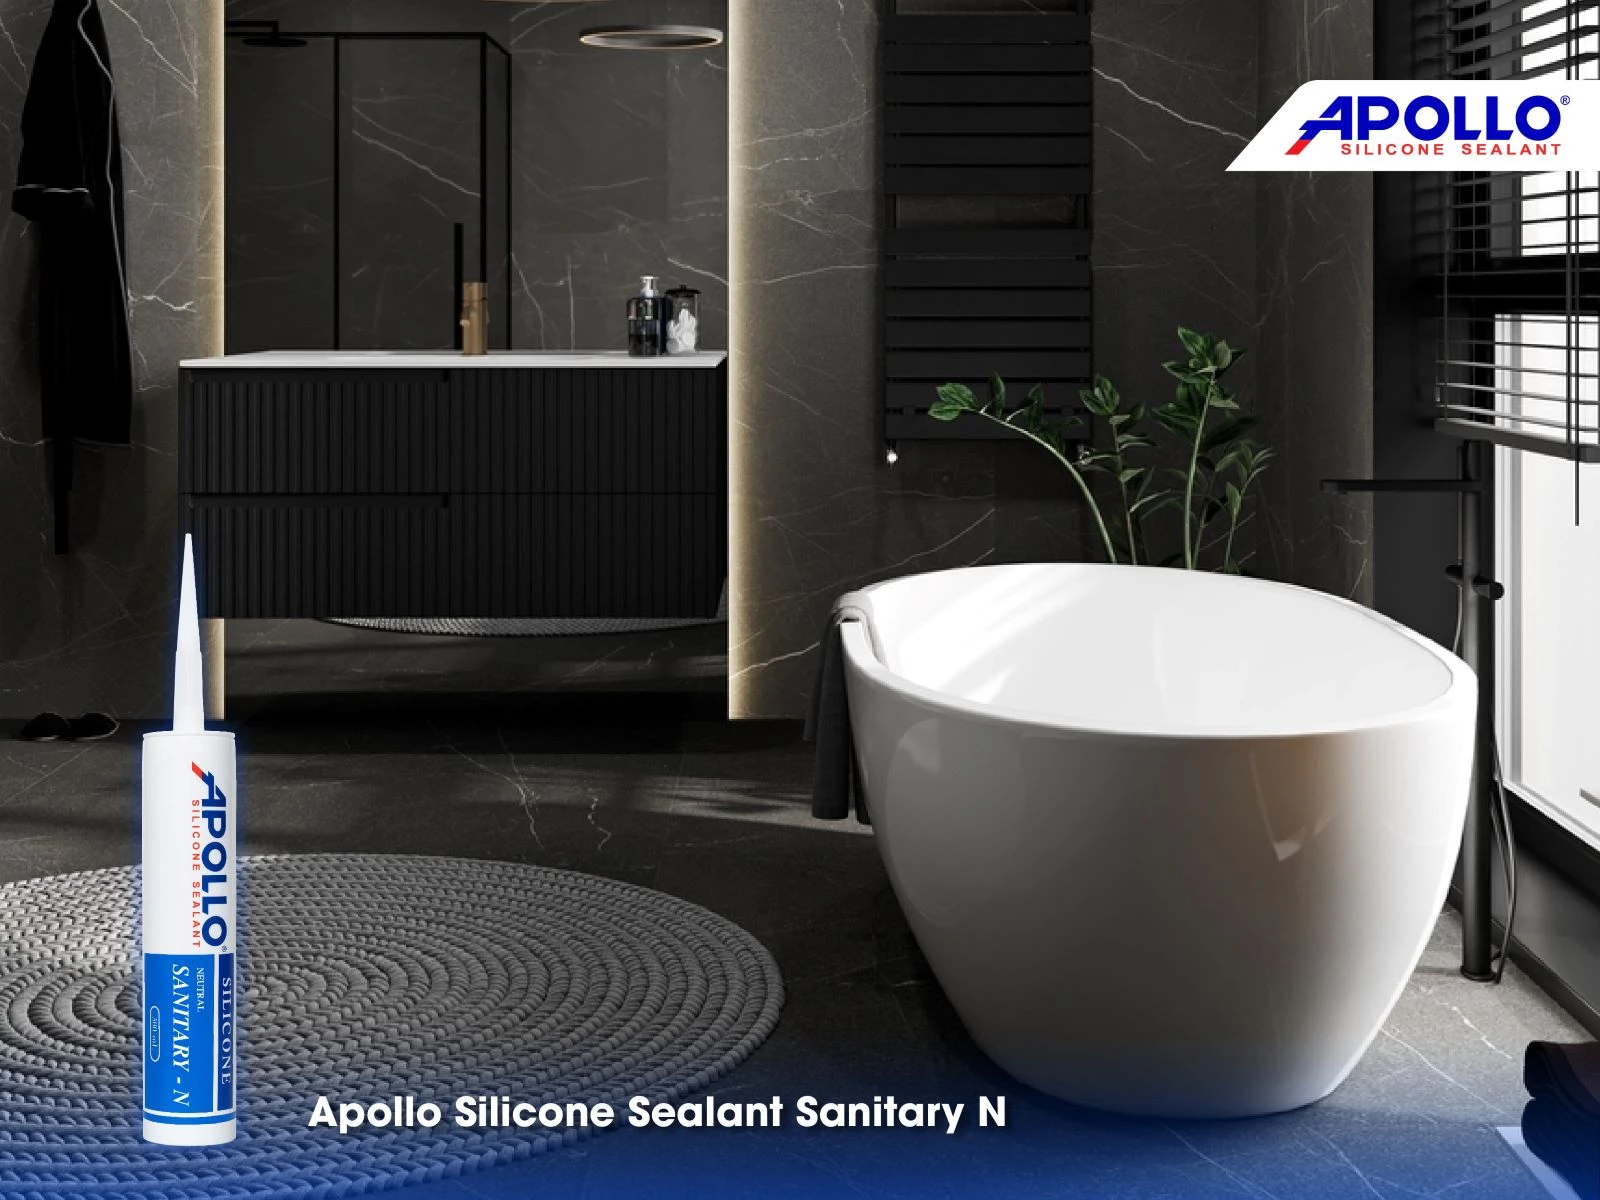 Apollo Silicone Sealant Sanitary - N tích hợp công nghệ vi sinh chống nấm mốc, chống thấm chuyên dụng